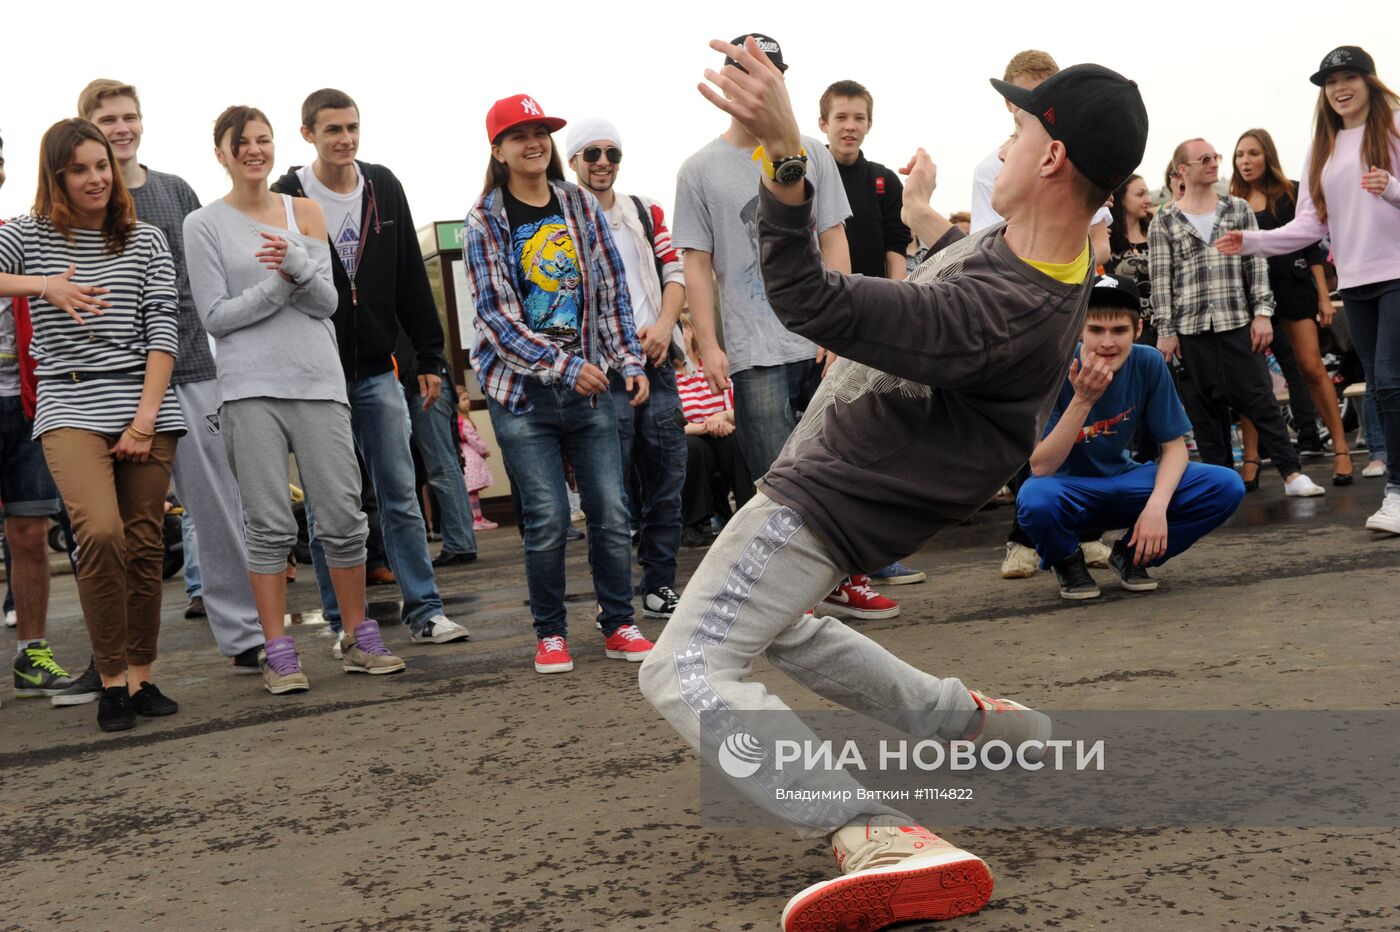 Праздник "День танца" в Москве